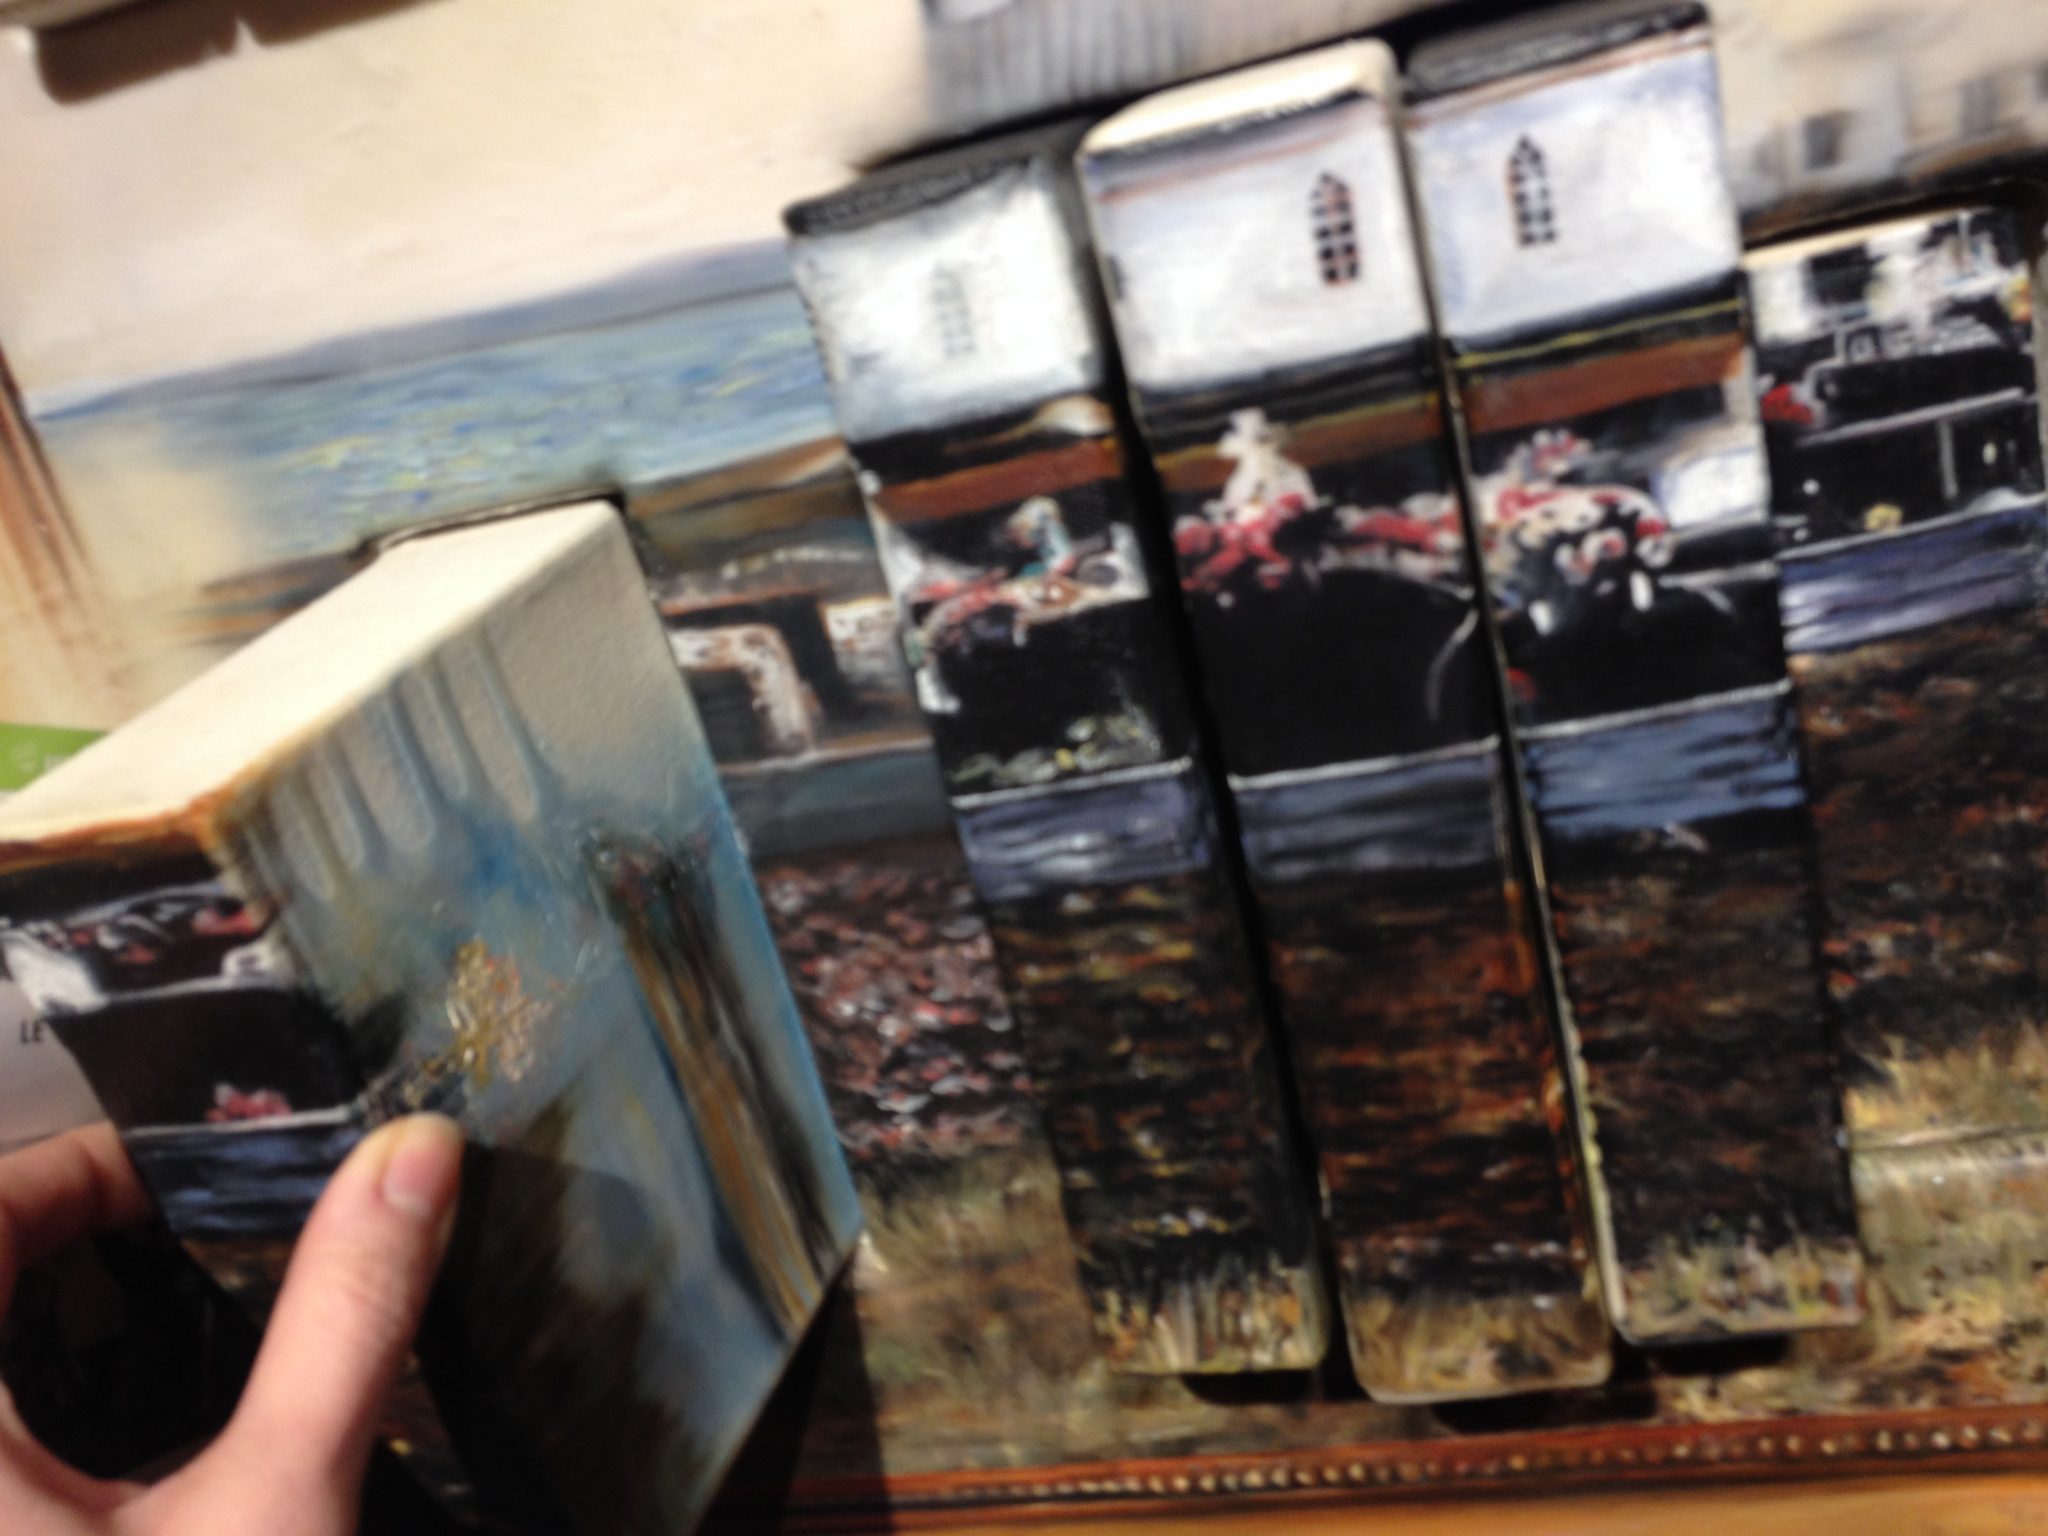 Les livres-toiles insérés dans l’œuvre permettent de déplacer les images laissées par les souvenirs. Photo: M.-C. Perras